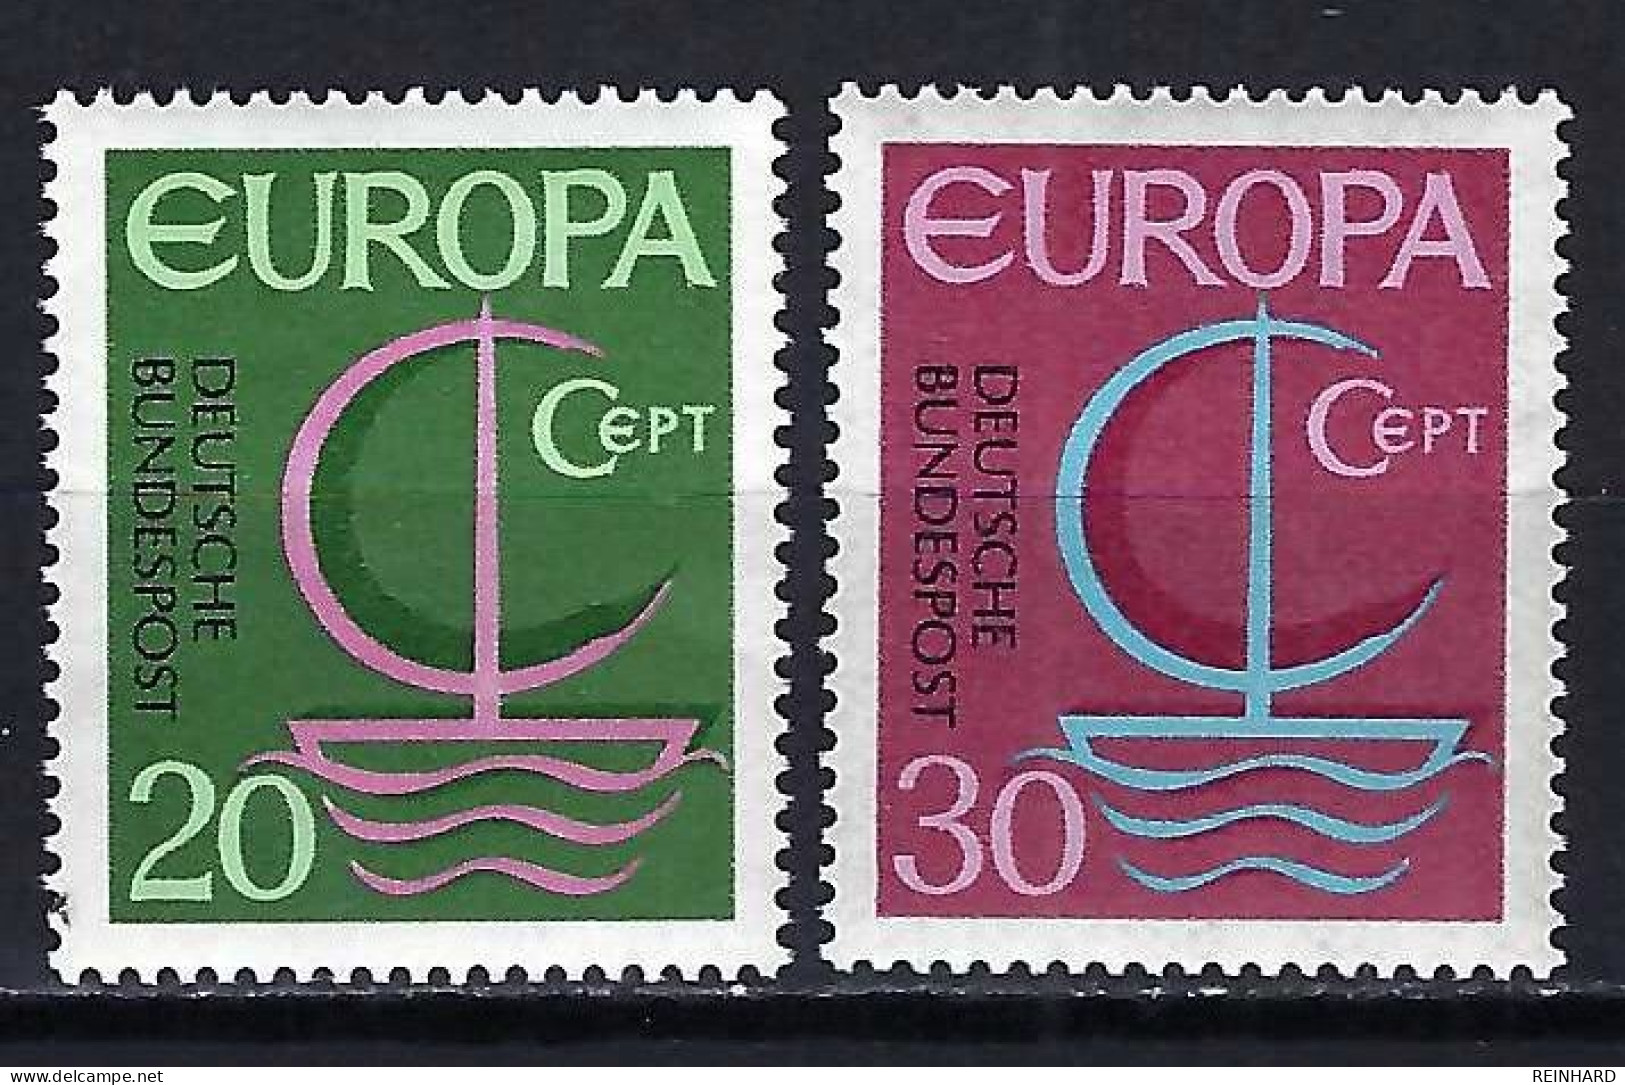 BUND Komplettsatz Mi-Nr. 519 - 520 Europa Postfrisch - Siehe Bild - Unused Stamps